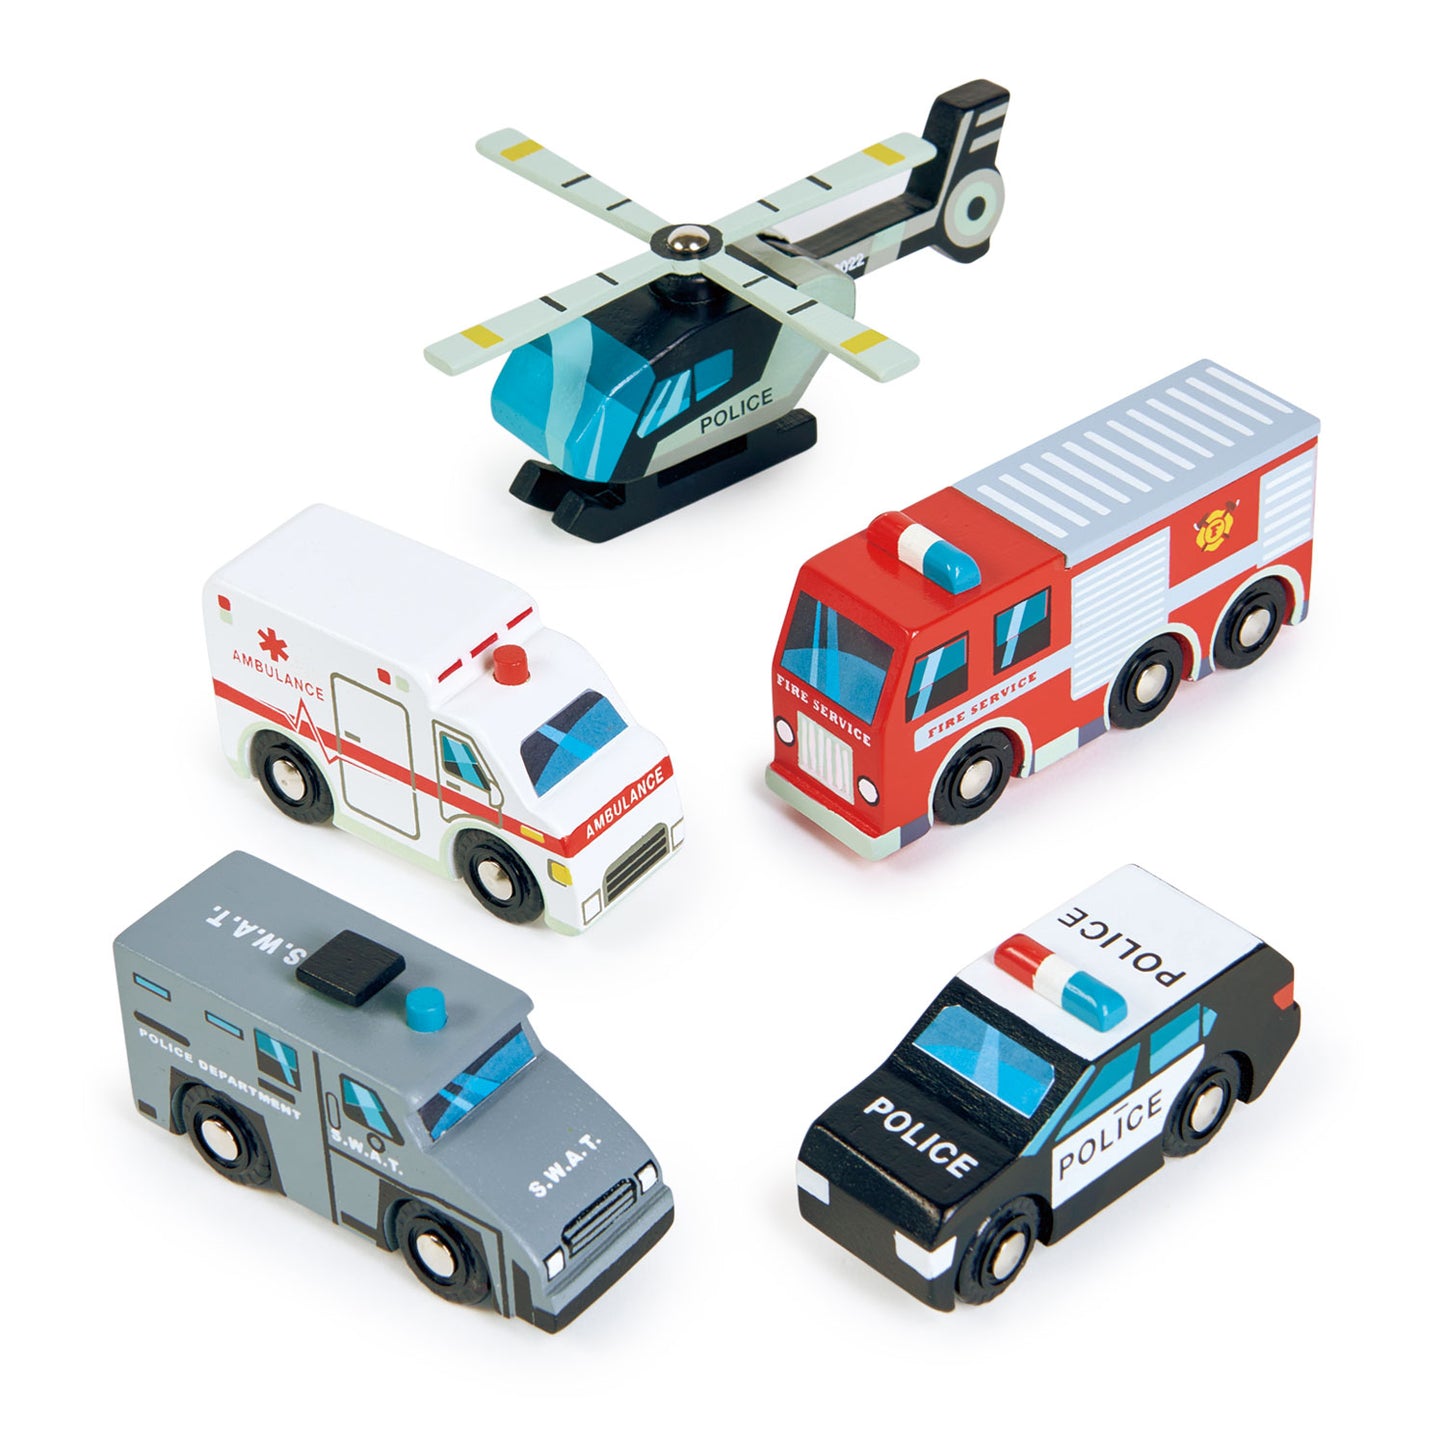 Emergency Vehicles by Tenderleaf Toys